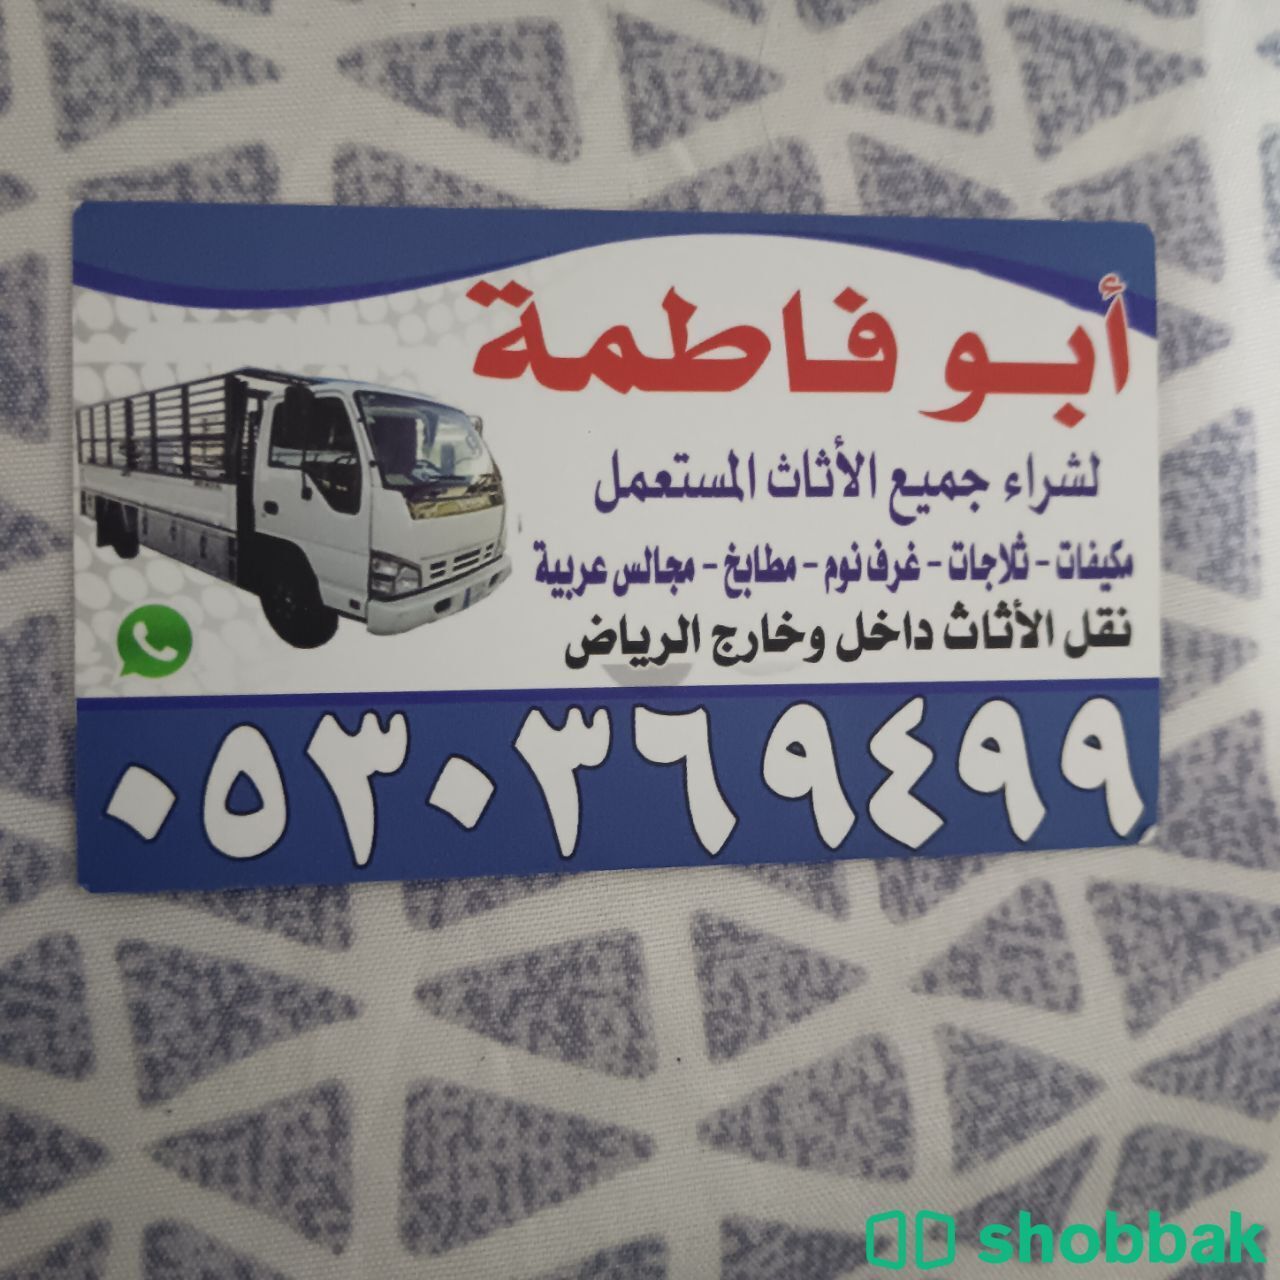 راعي شراء أثاث مستعمل حي المعيزيلة 0530369499  Shobbak Saudi Arabia